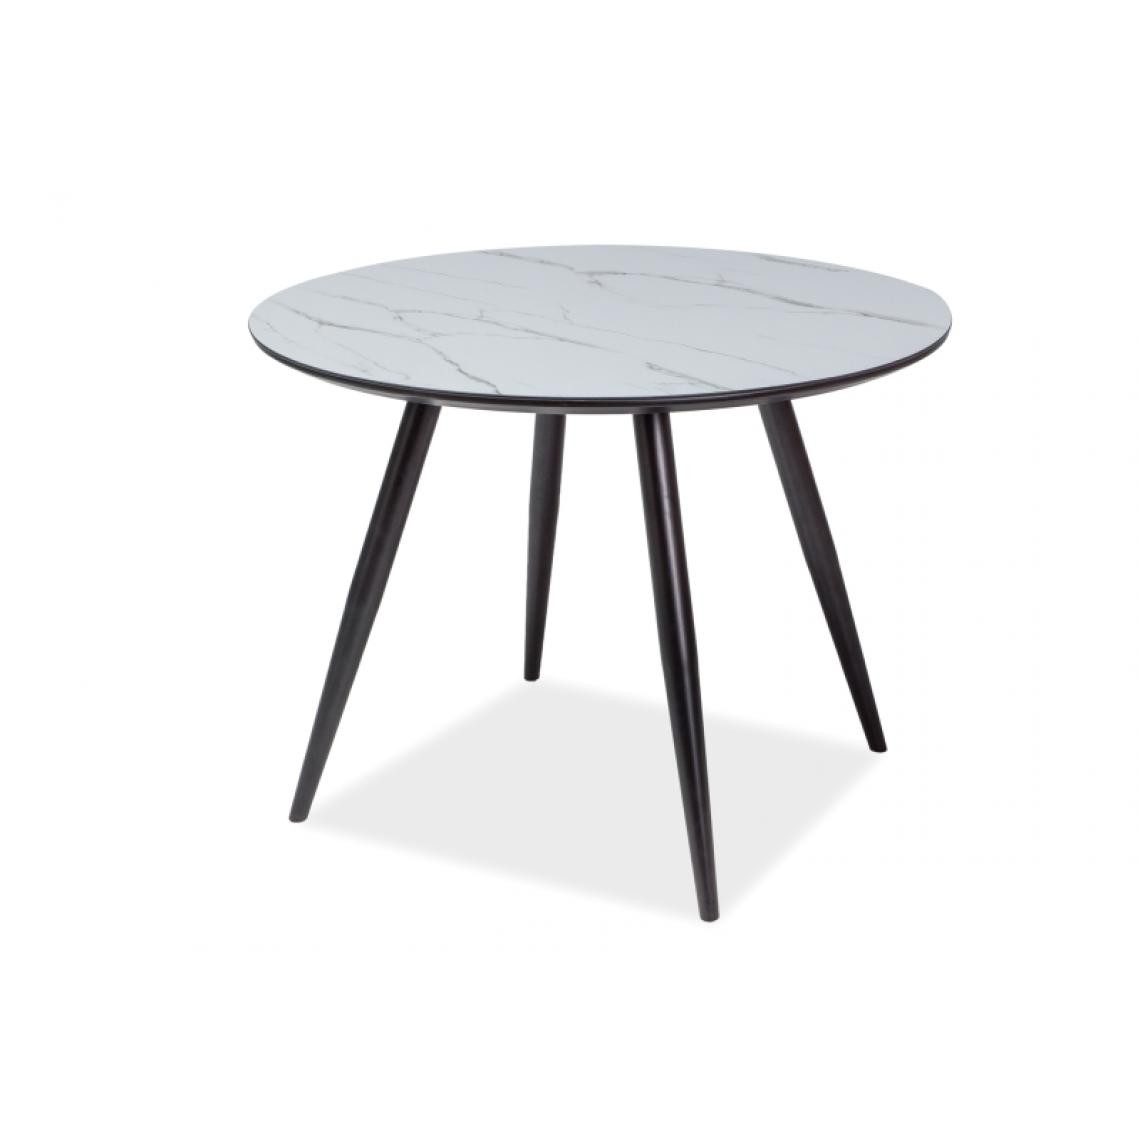 Hucoco - IBEAL - Table en verre imitant le marbre - 100x100x75 cm - Plateau réalisé en bois MDF et en verre - Pieds en métal - Gris - Tables à manger